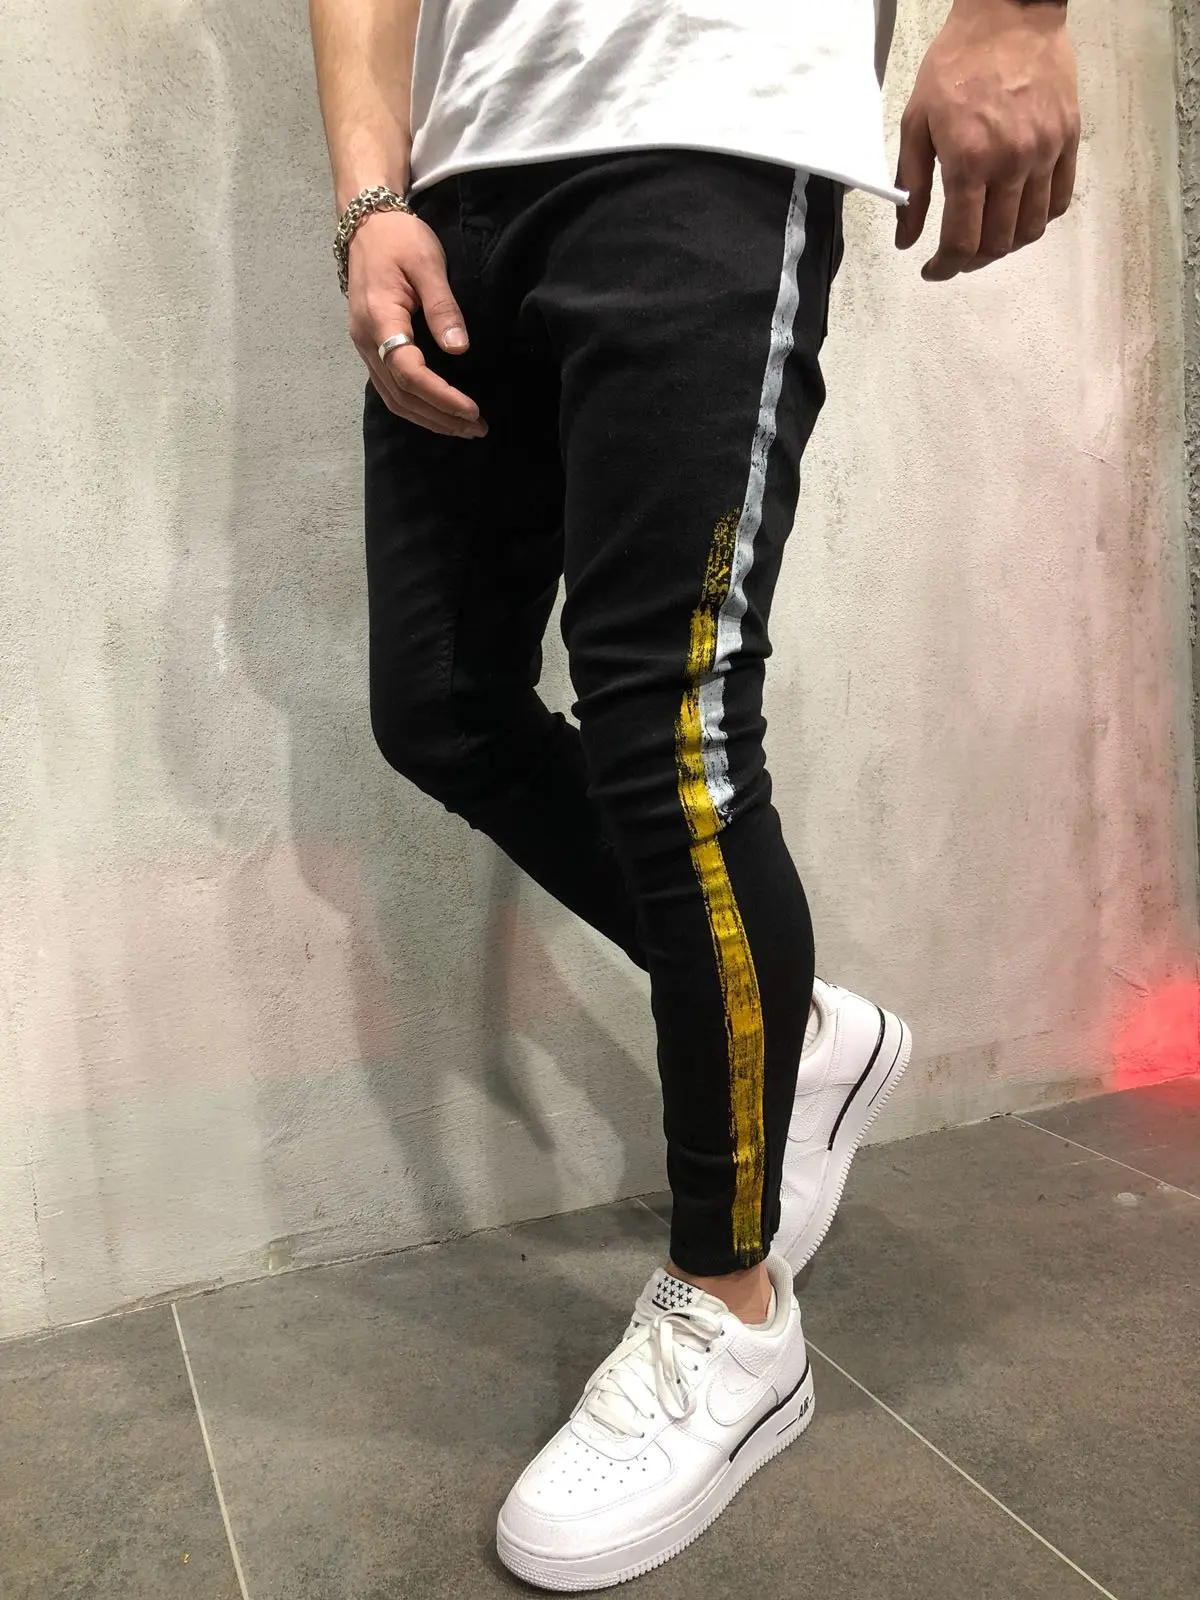 Узкие джинсовые брюки карандаш для мужчин хип хоп мода весна осень 2019 мужские